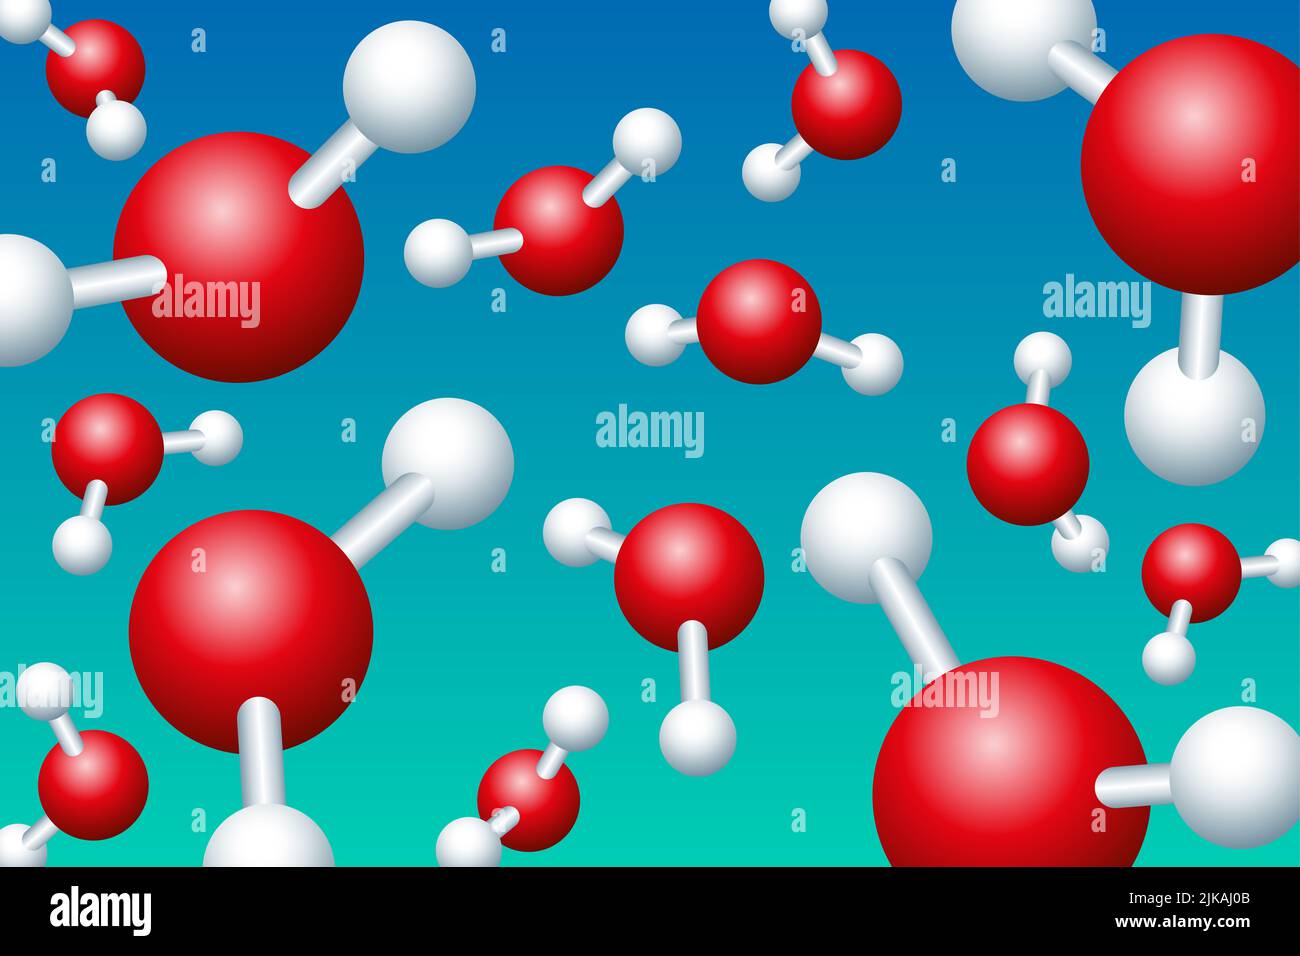 Molecole d'acqua galleggiano di fronte ad uno sfondo turchese bluastro. Modelli a sfera e bastone di H2O molecole. Foto Stock